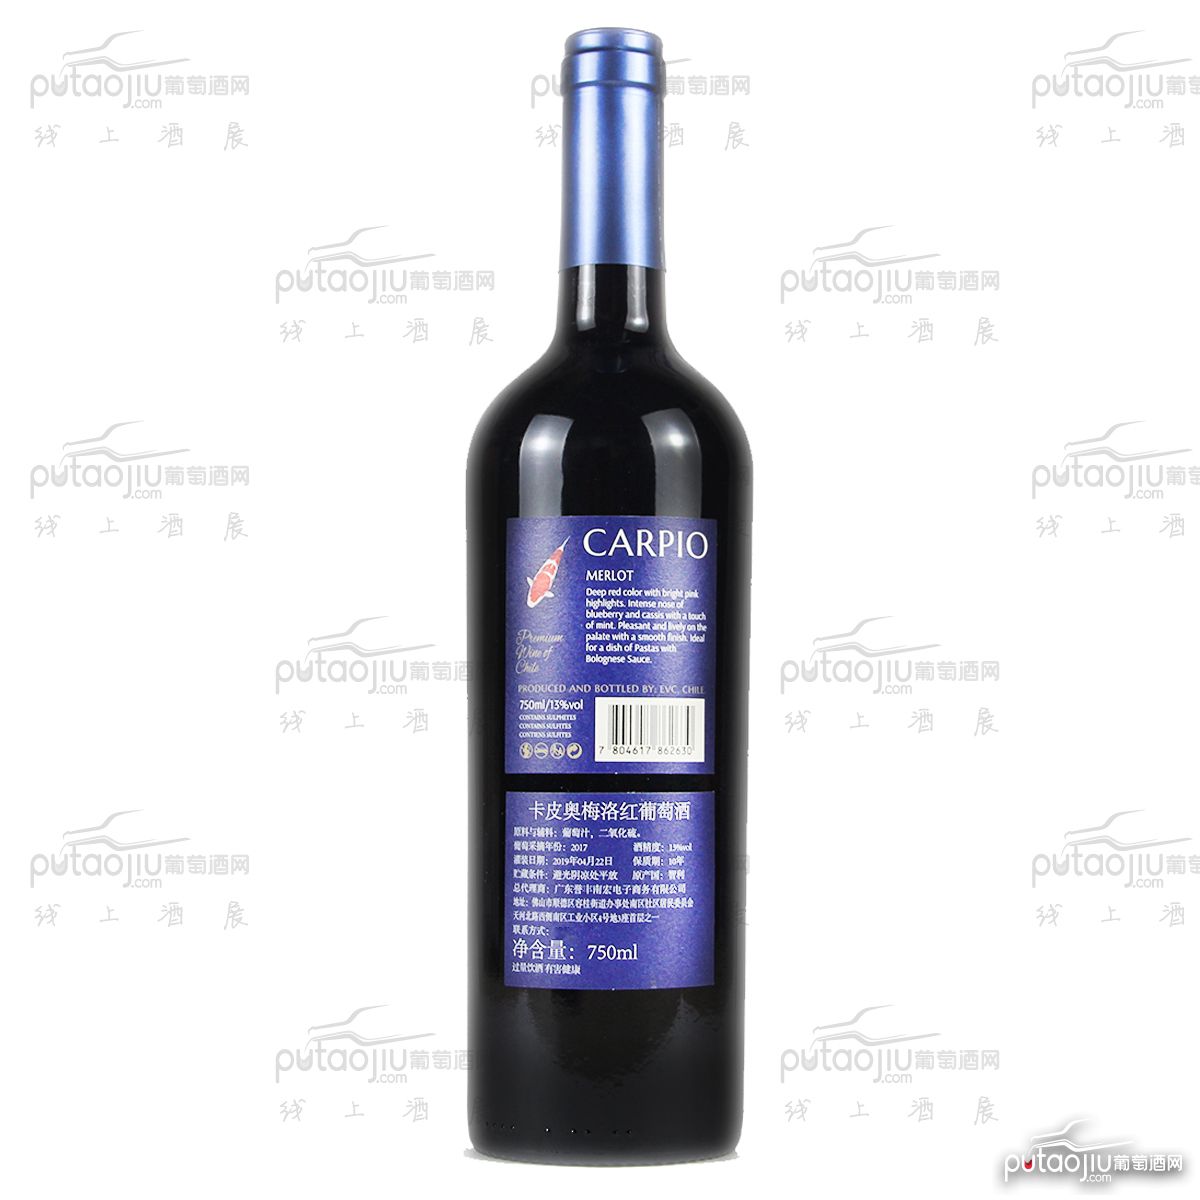 智利中央山谷克莱酒庄卡皮奥梅洛入门级干红葡萄酒